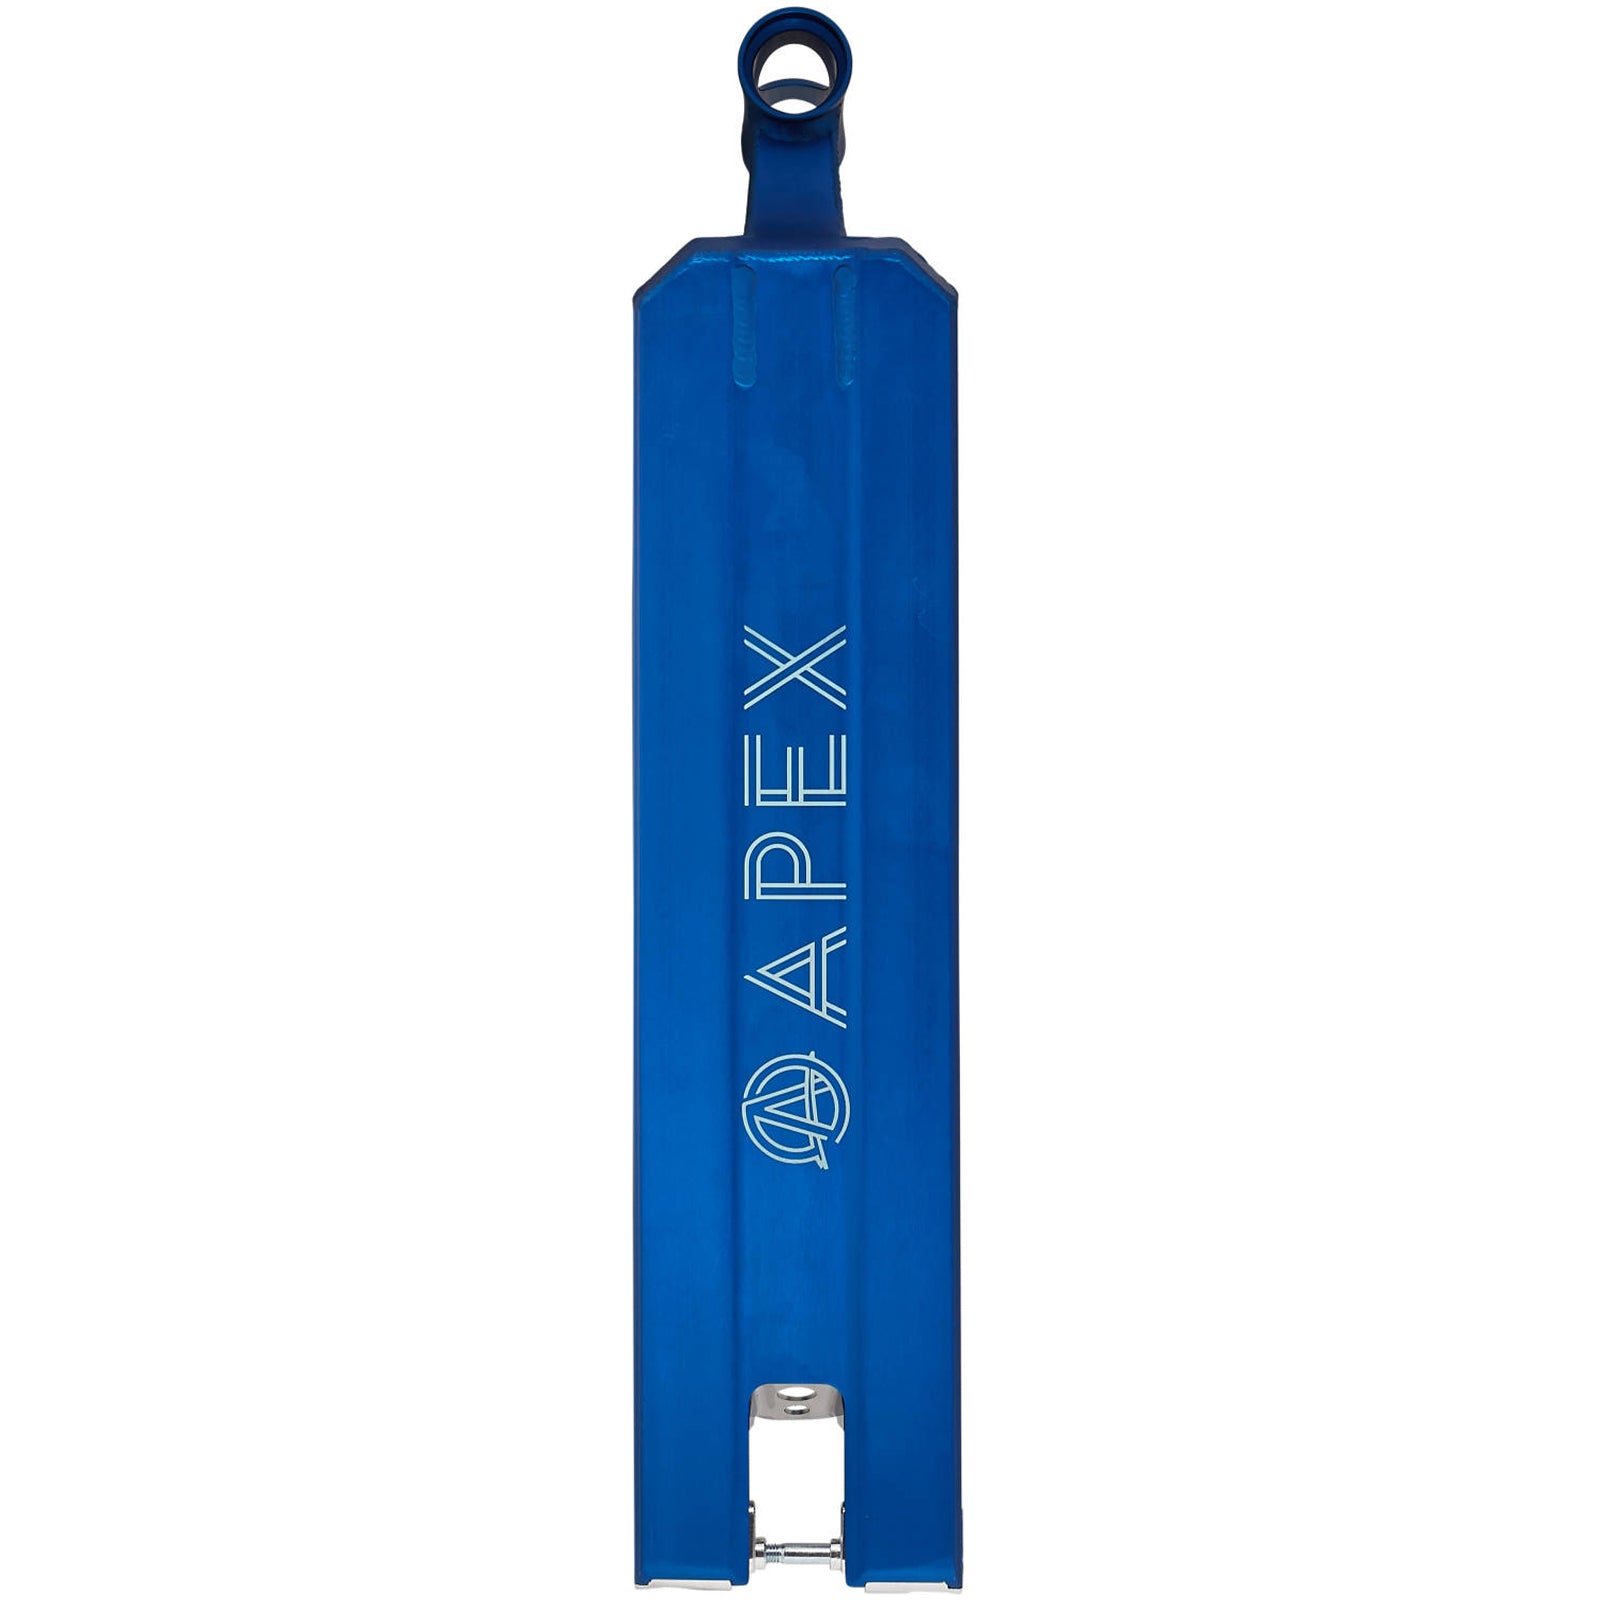 APEX 5" Large Boxed 600mm Deck Bleu